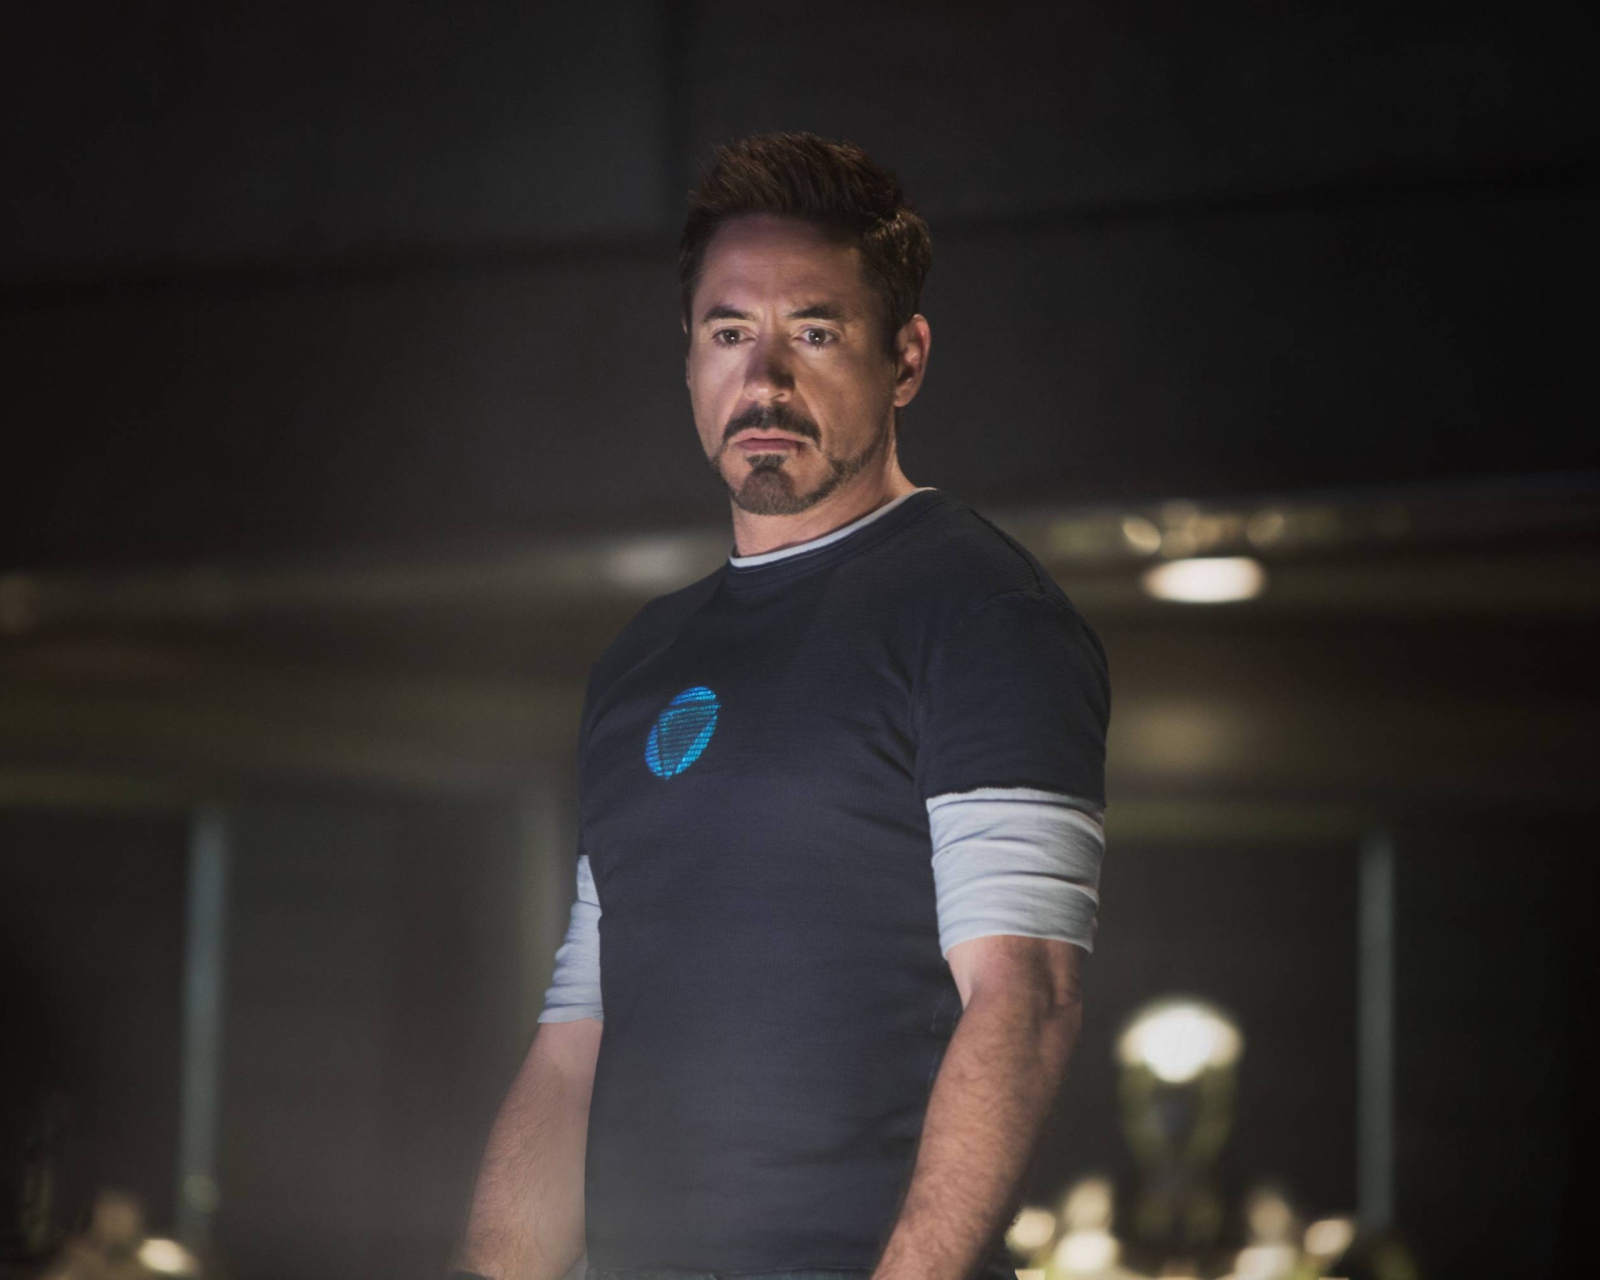 Sfondi Robert Downey Jr As Iron Man 3 1600x1280